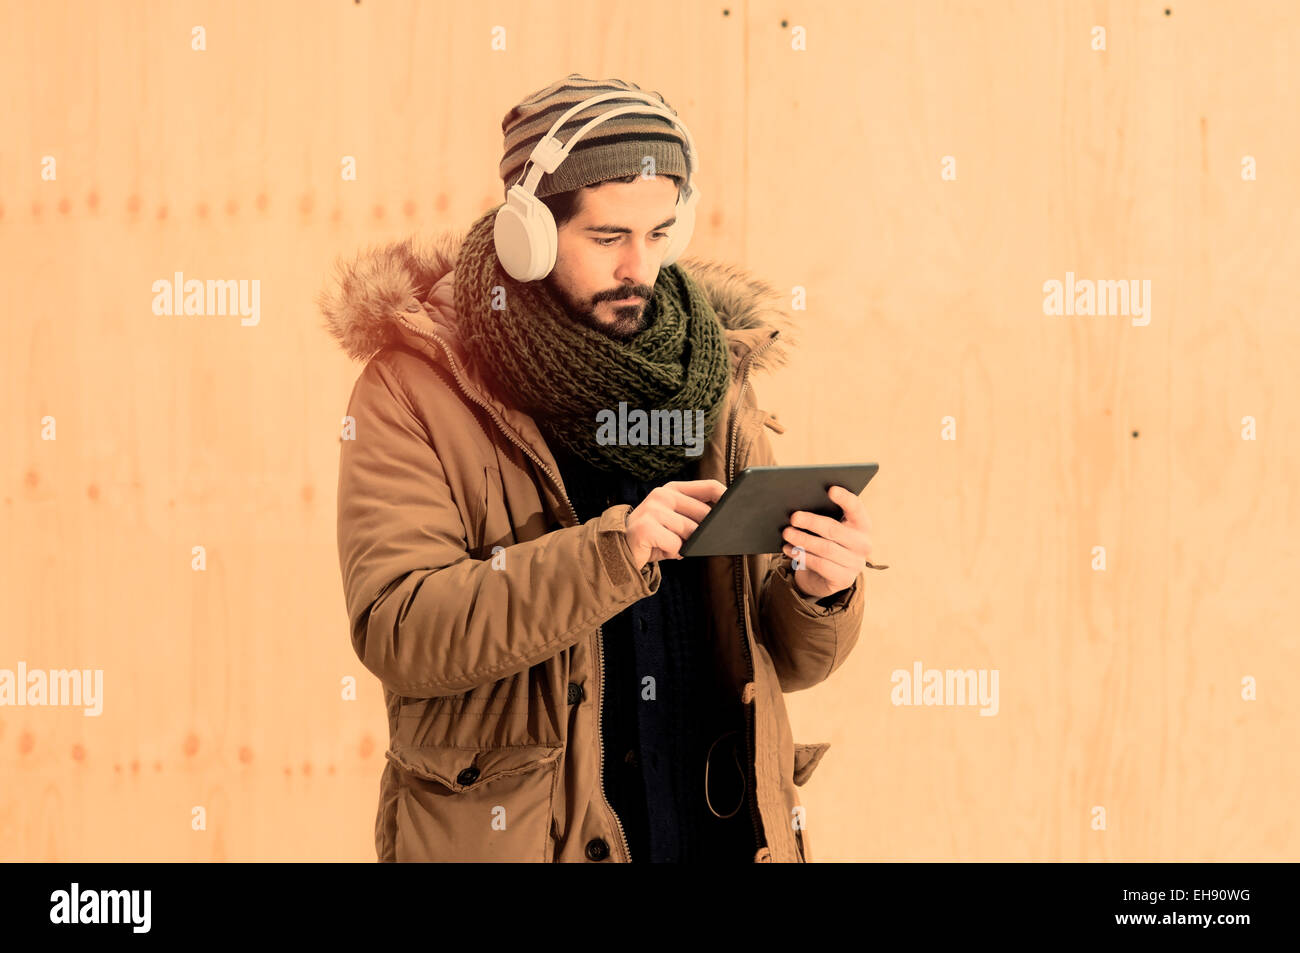 junger Mann hält eine Tablette in städtischen im Freieneinstellung Warmton-Filter angewendet Stockfoto